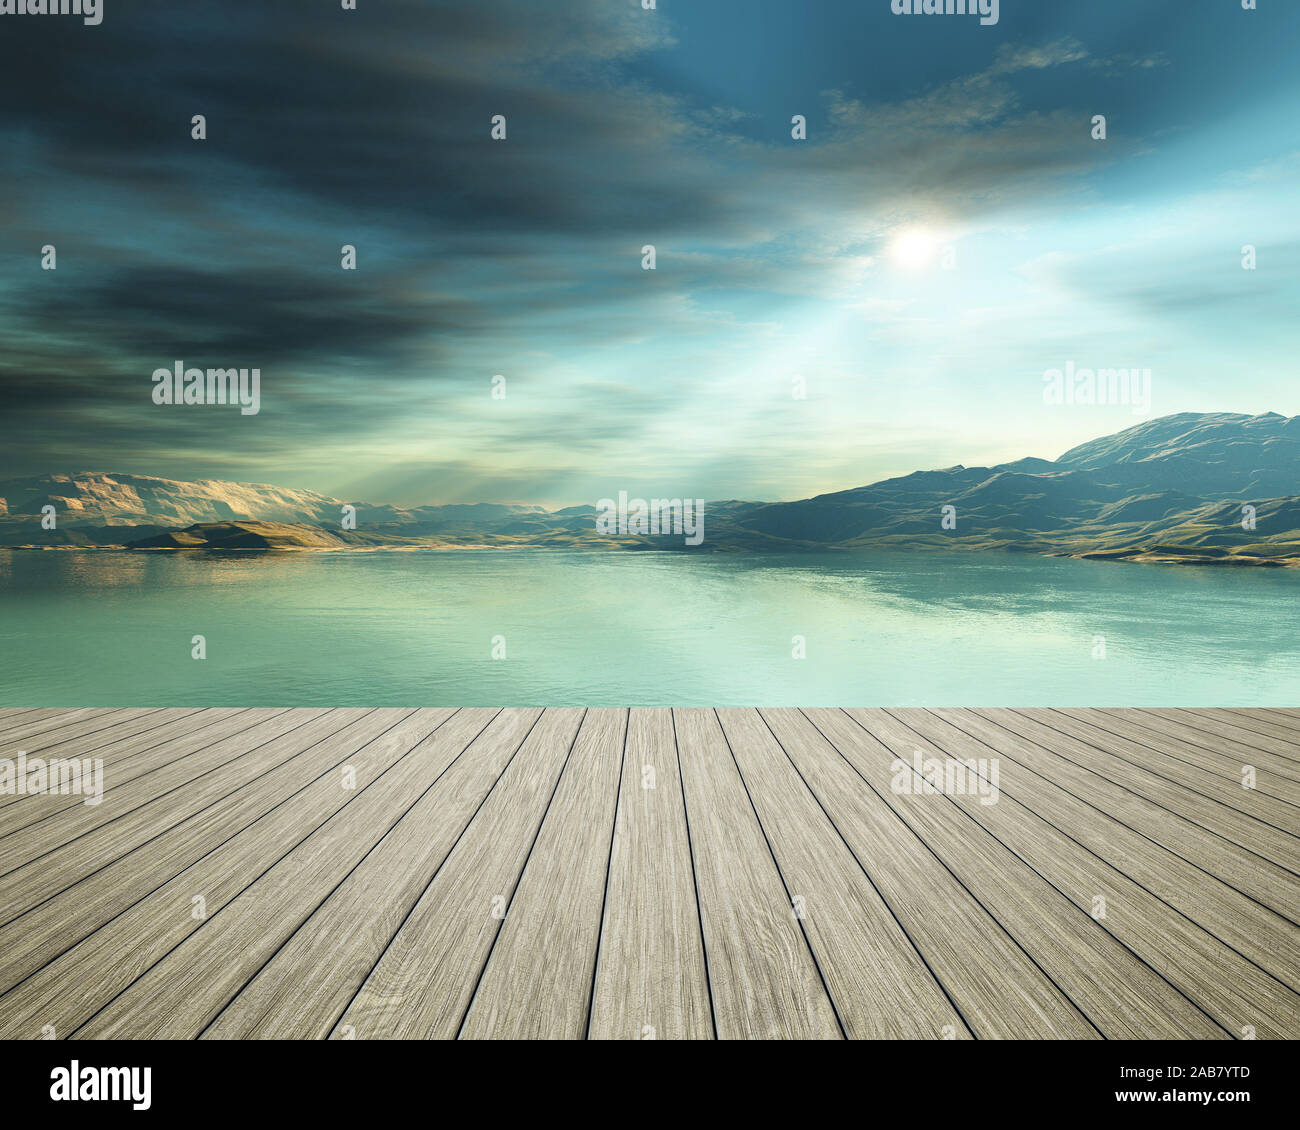 Sicht von einem Bootssteg aus auf eine schoene Fantasie-Landschaft am Meer Stock Photo